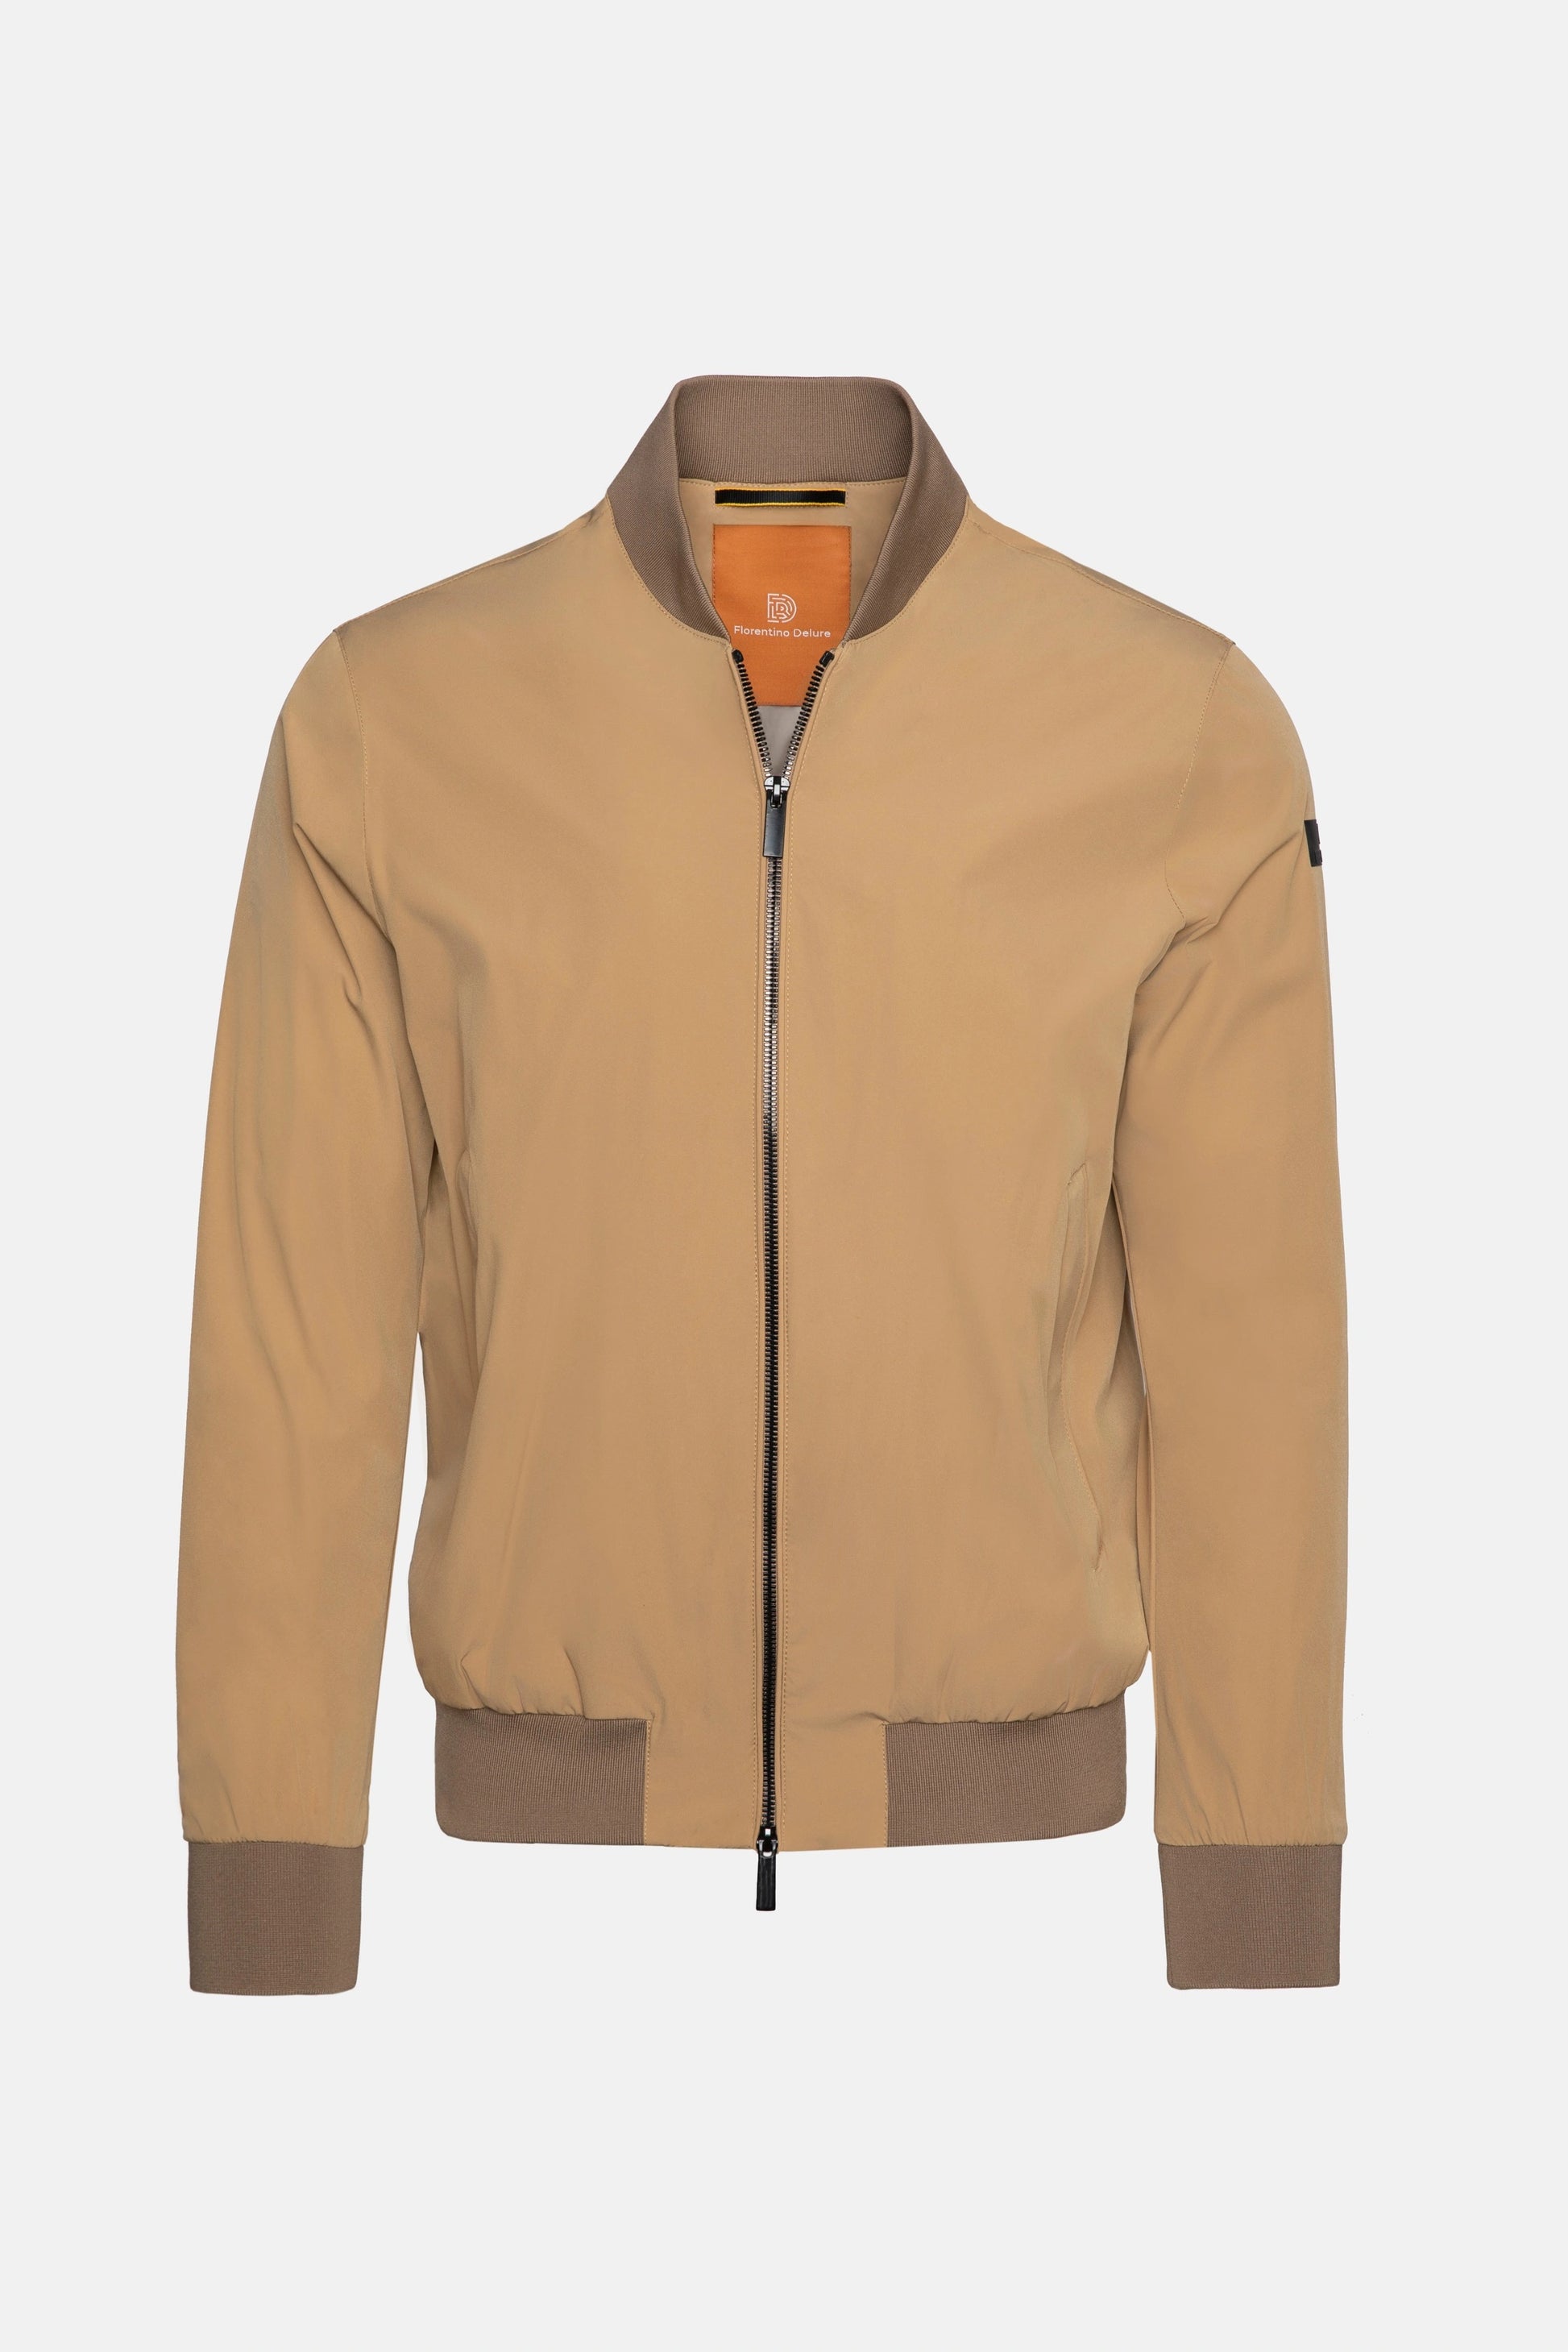 Beige Bomber Jacket Menswear Coats & Jackets